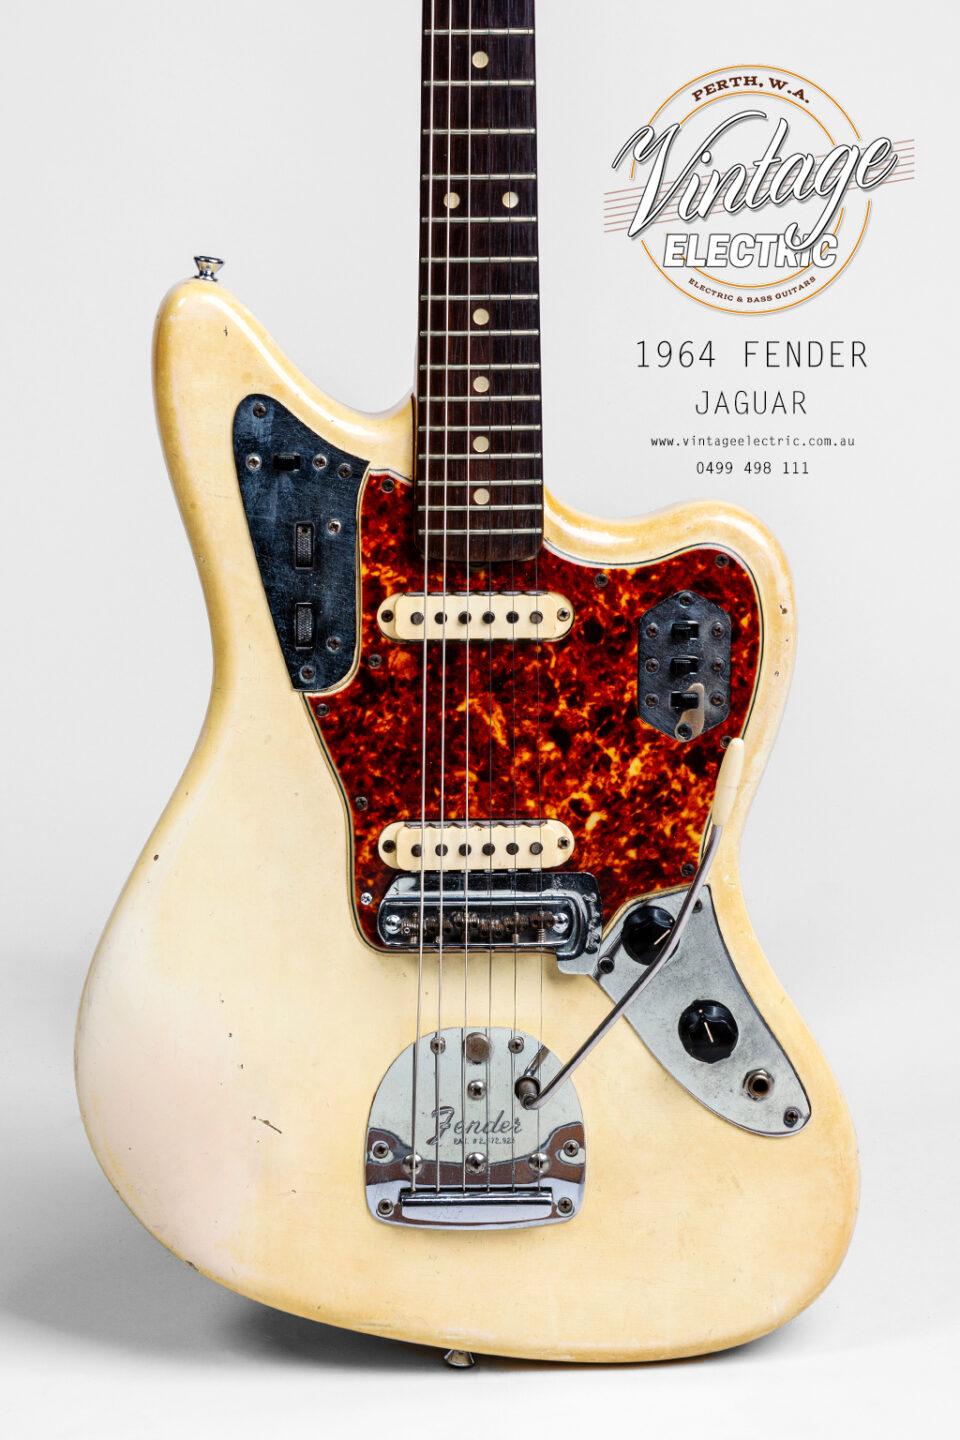 1964 Fender Jaguar Olympic White Body